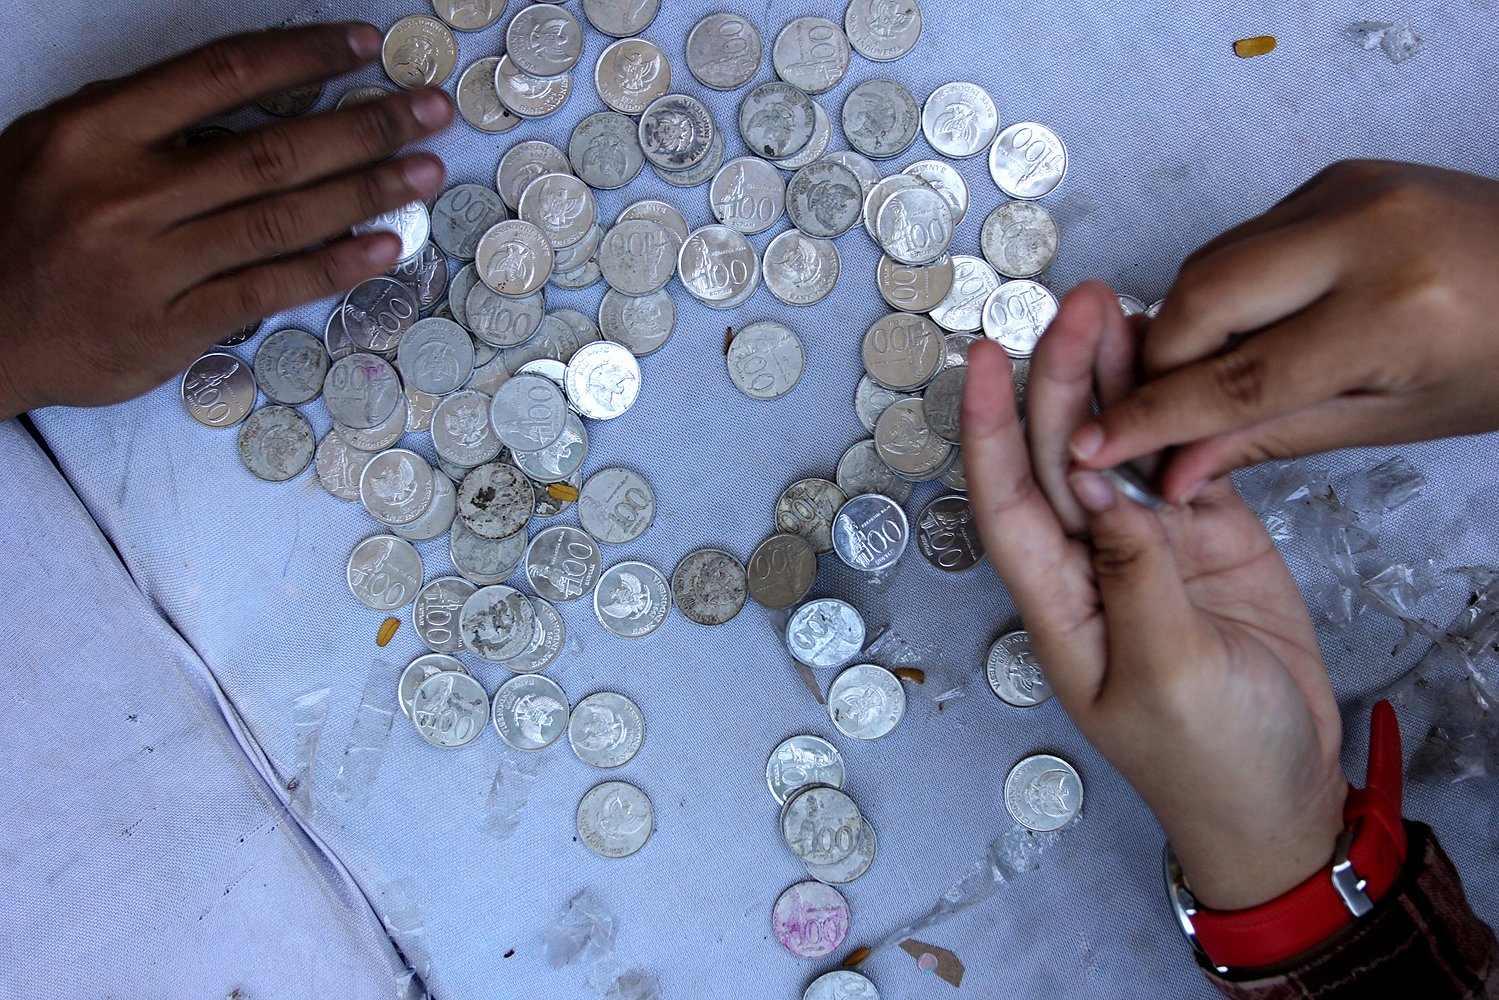 Deputi Gubernur Bank Indonesia, Ronald Waas mengatakan uang logam merupakan alat pembayaran yang sah.